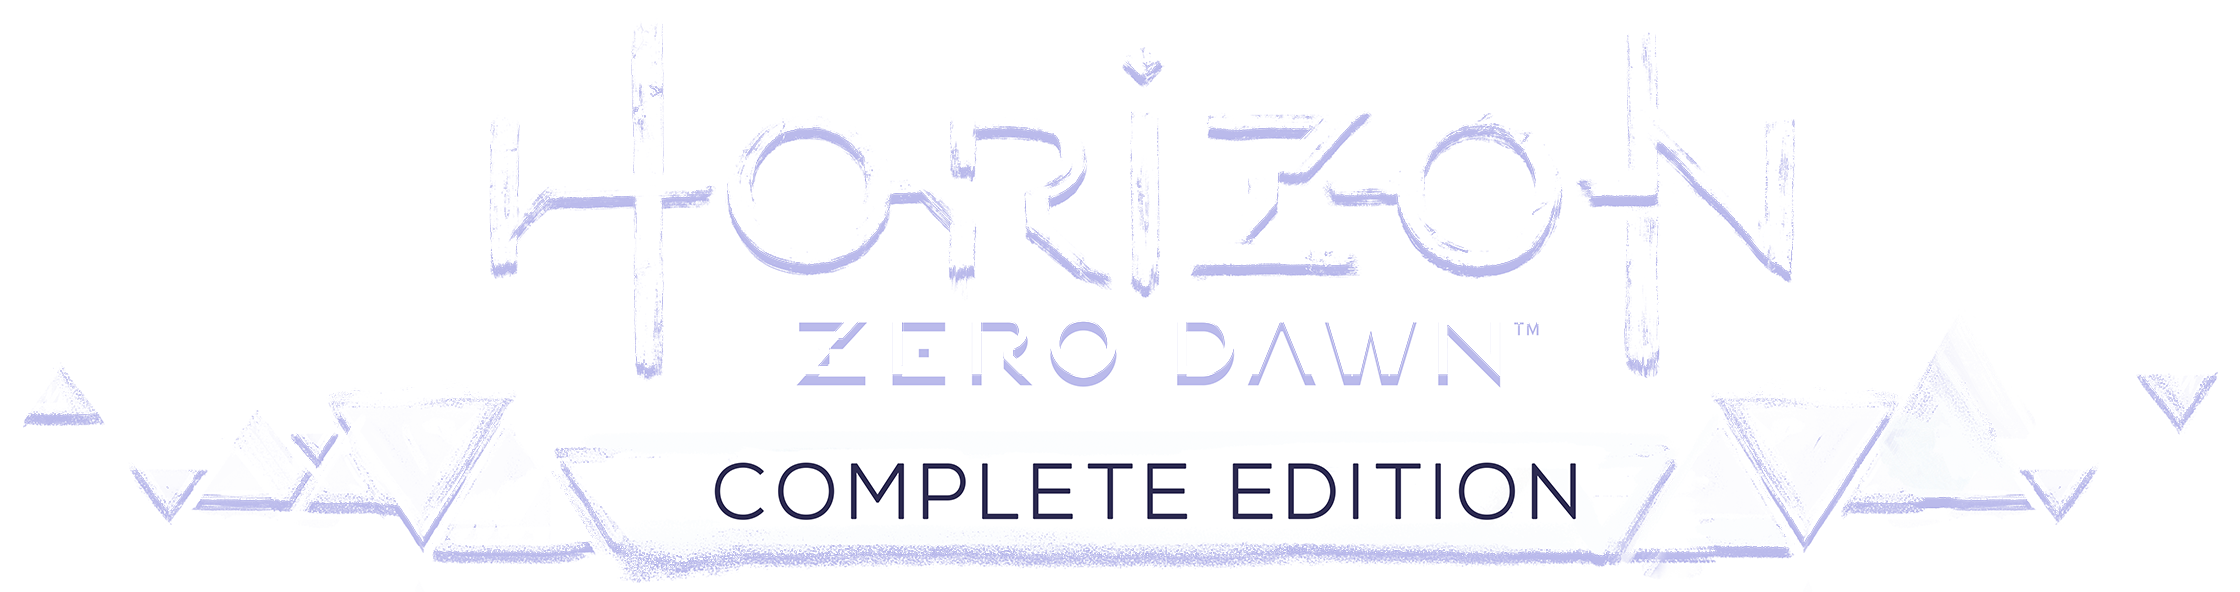 Horizon Zero Dawn Complete Edition gratuito na PS Store